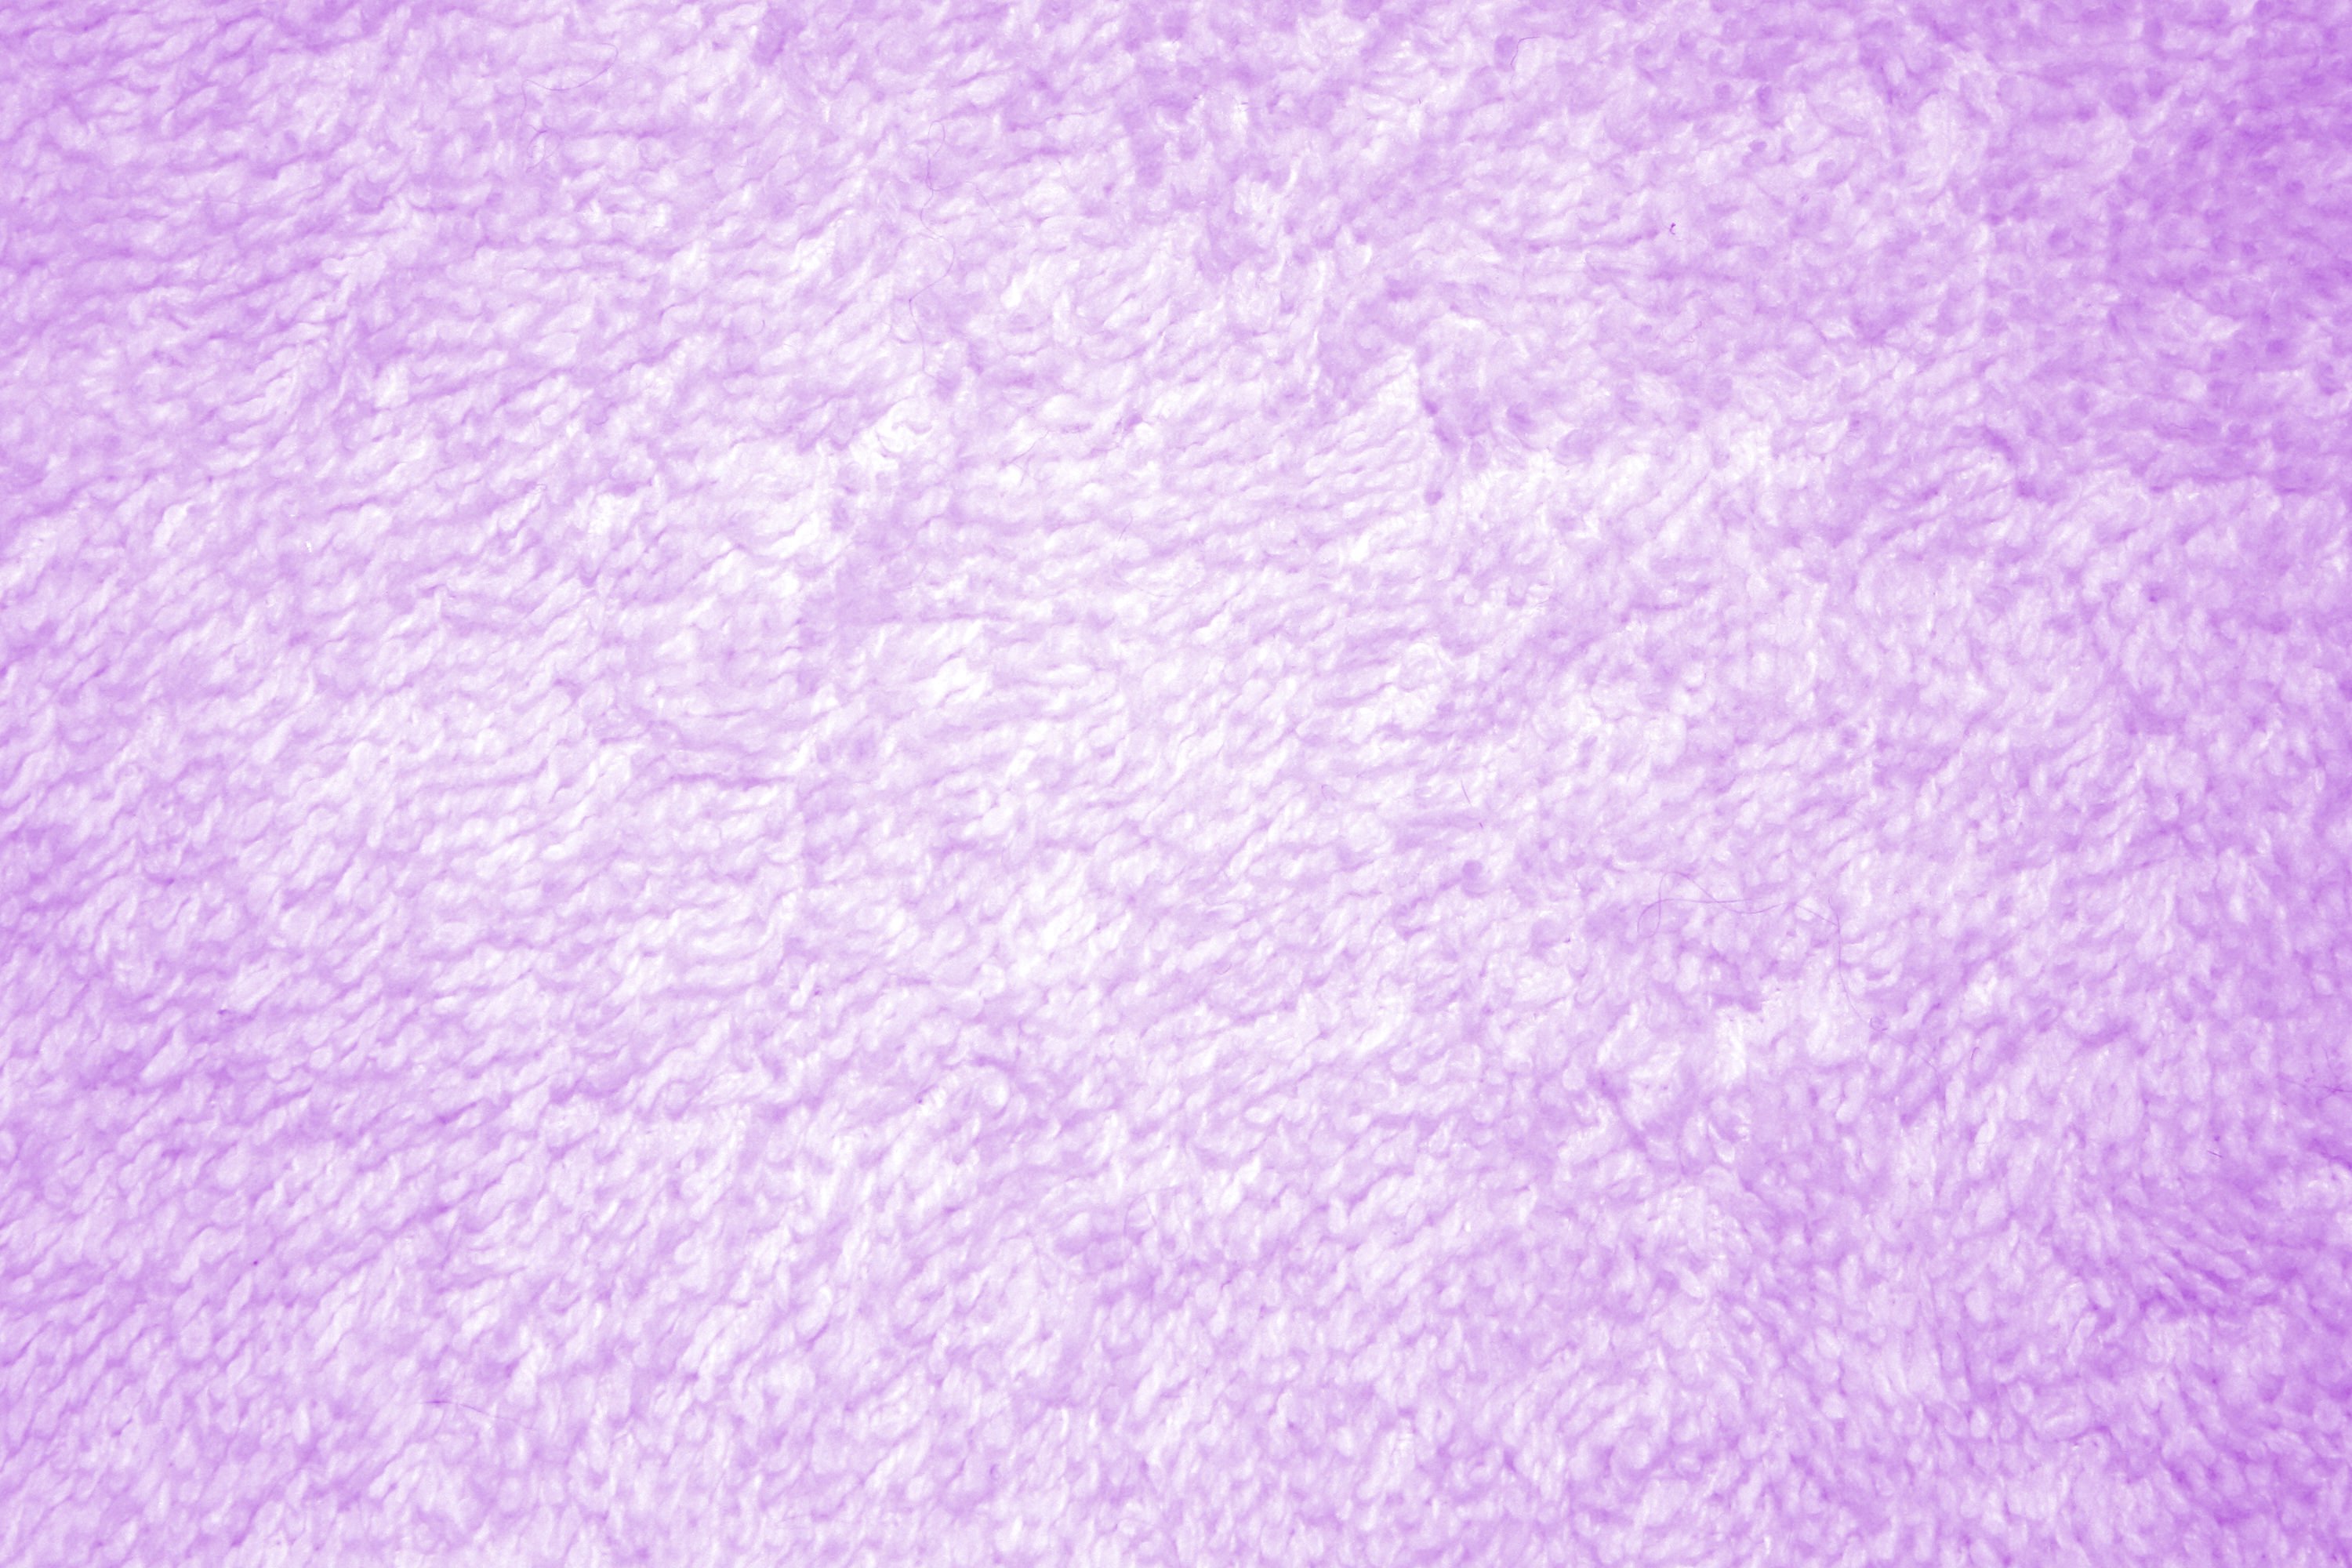 Purple Terry Cloth Texture Picture Photograph Photos Public 3000x2000